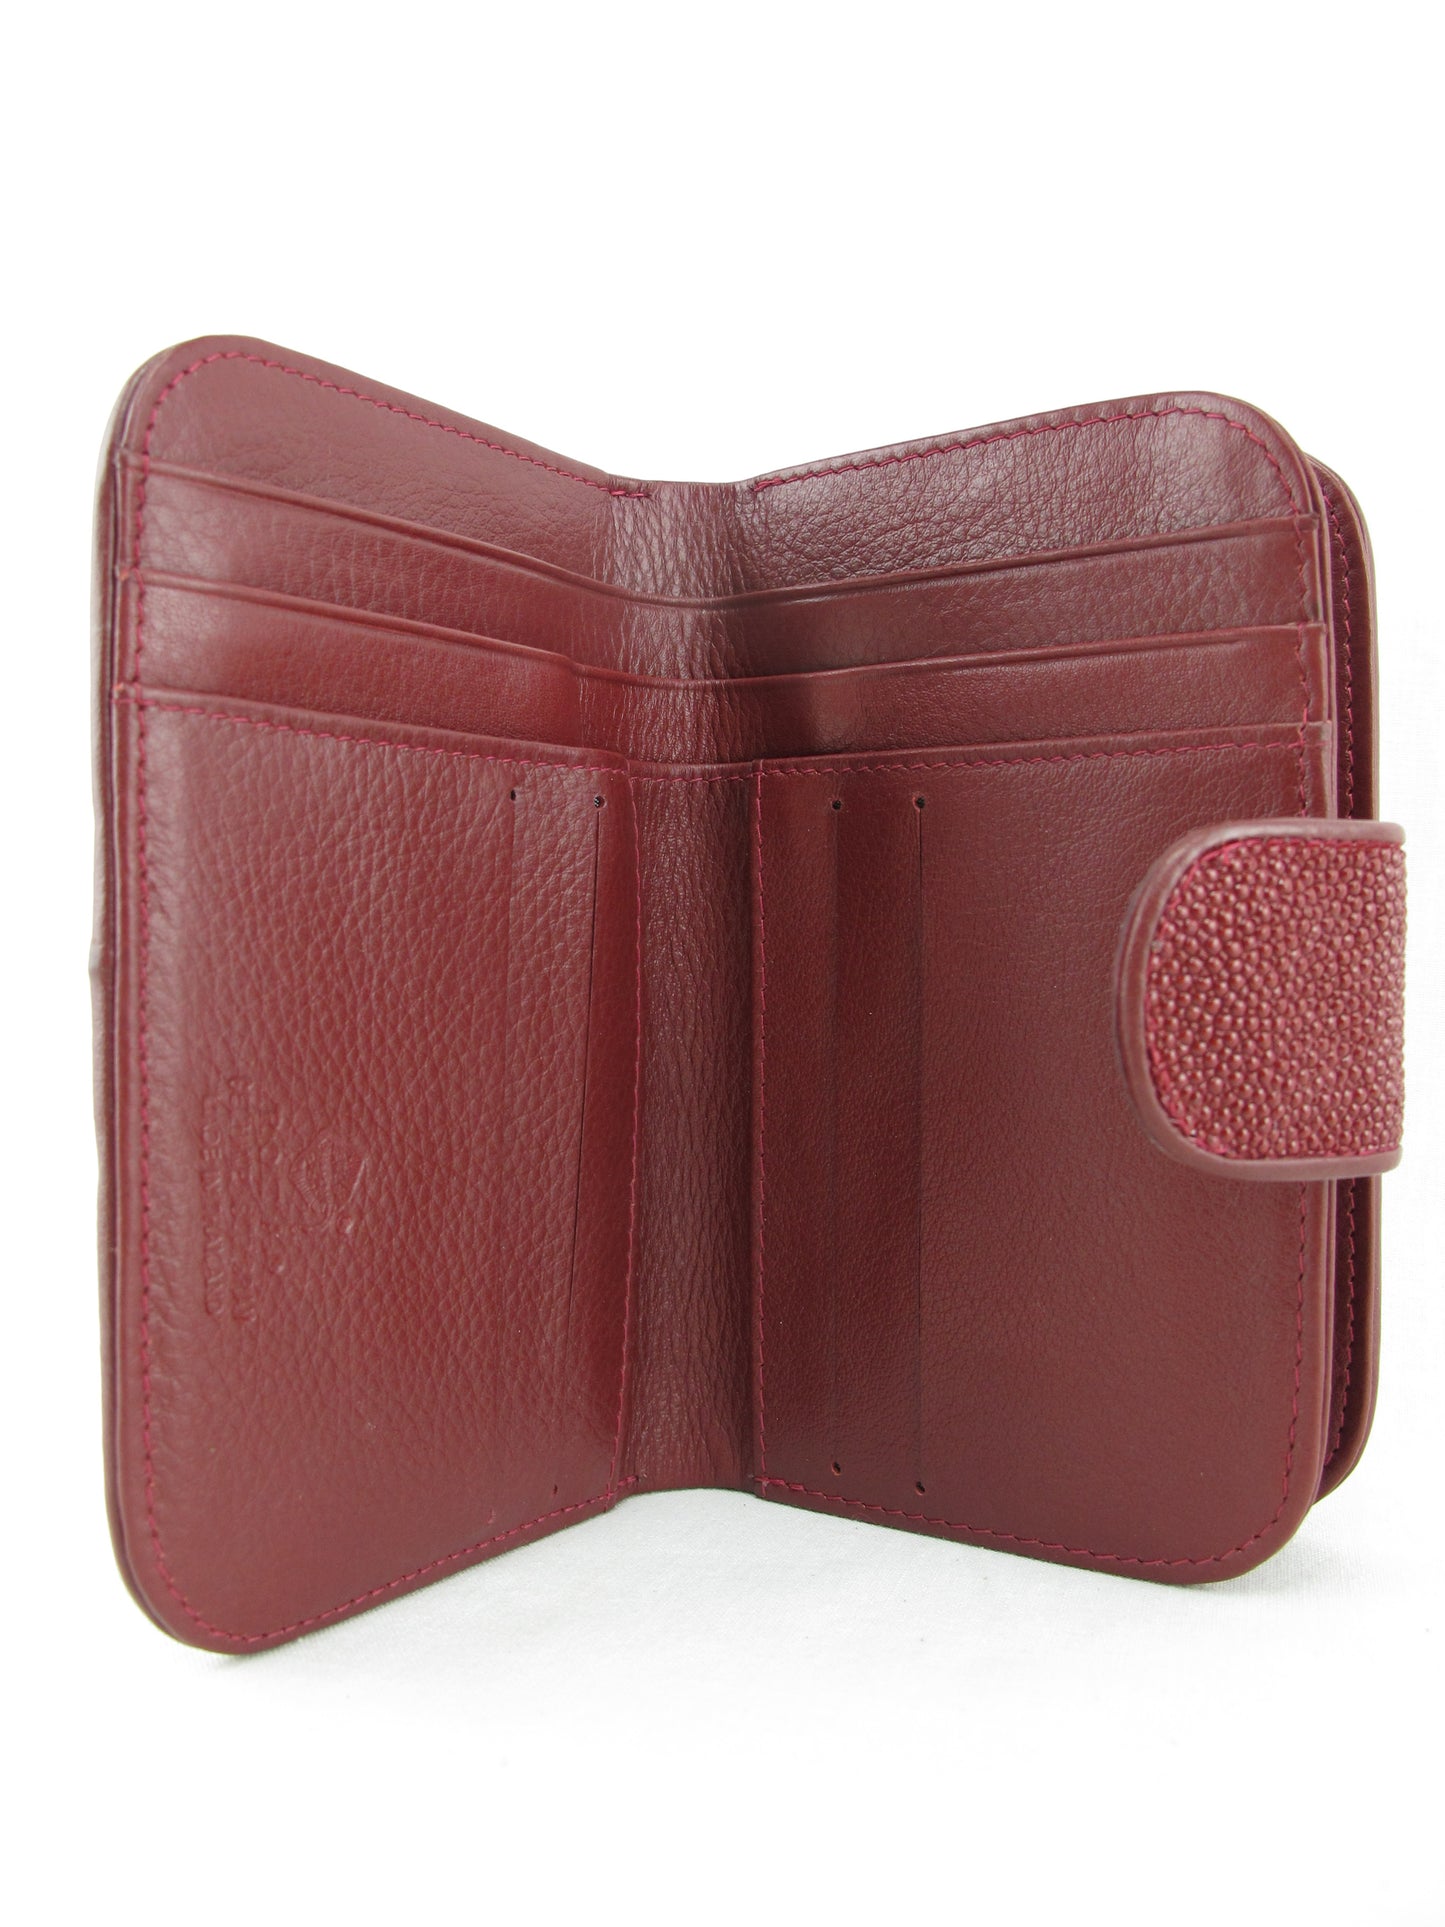 Genuine Stingray Skin Leather Medium Clutch Wallet Zip Coins Purse